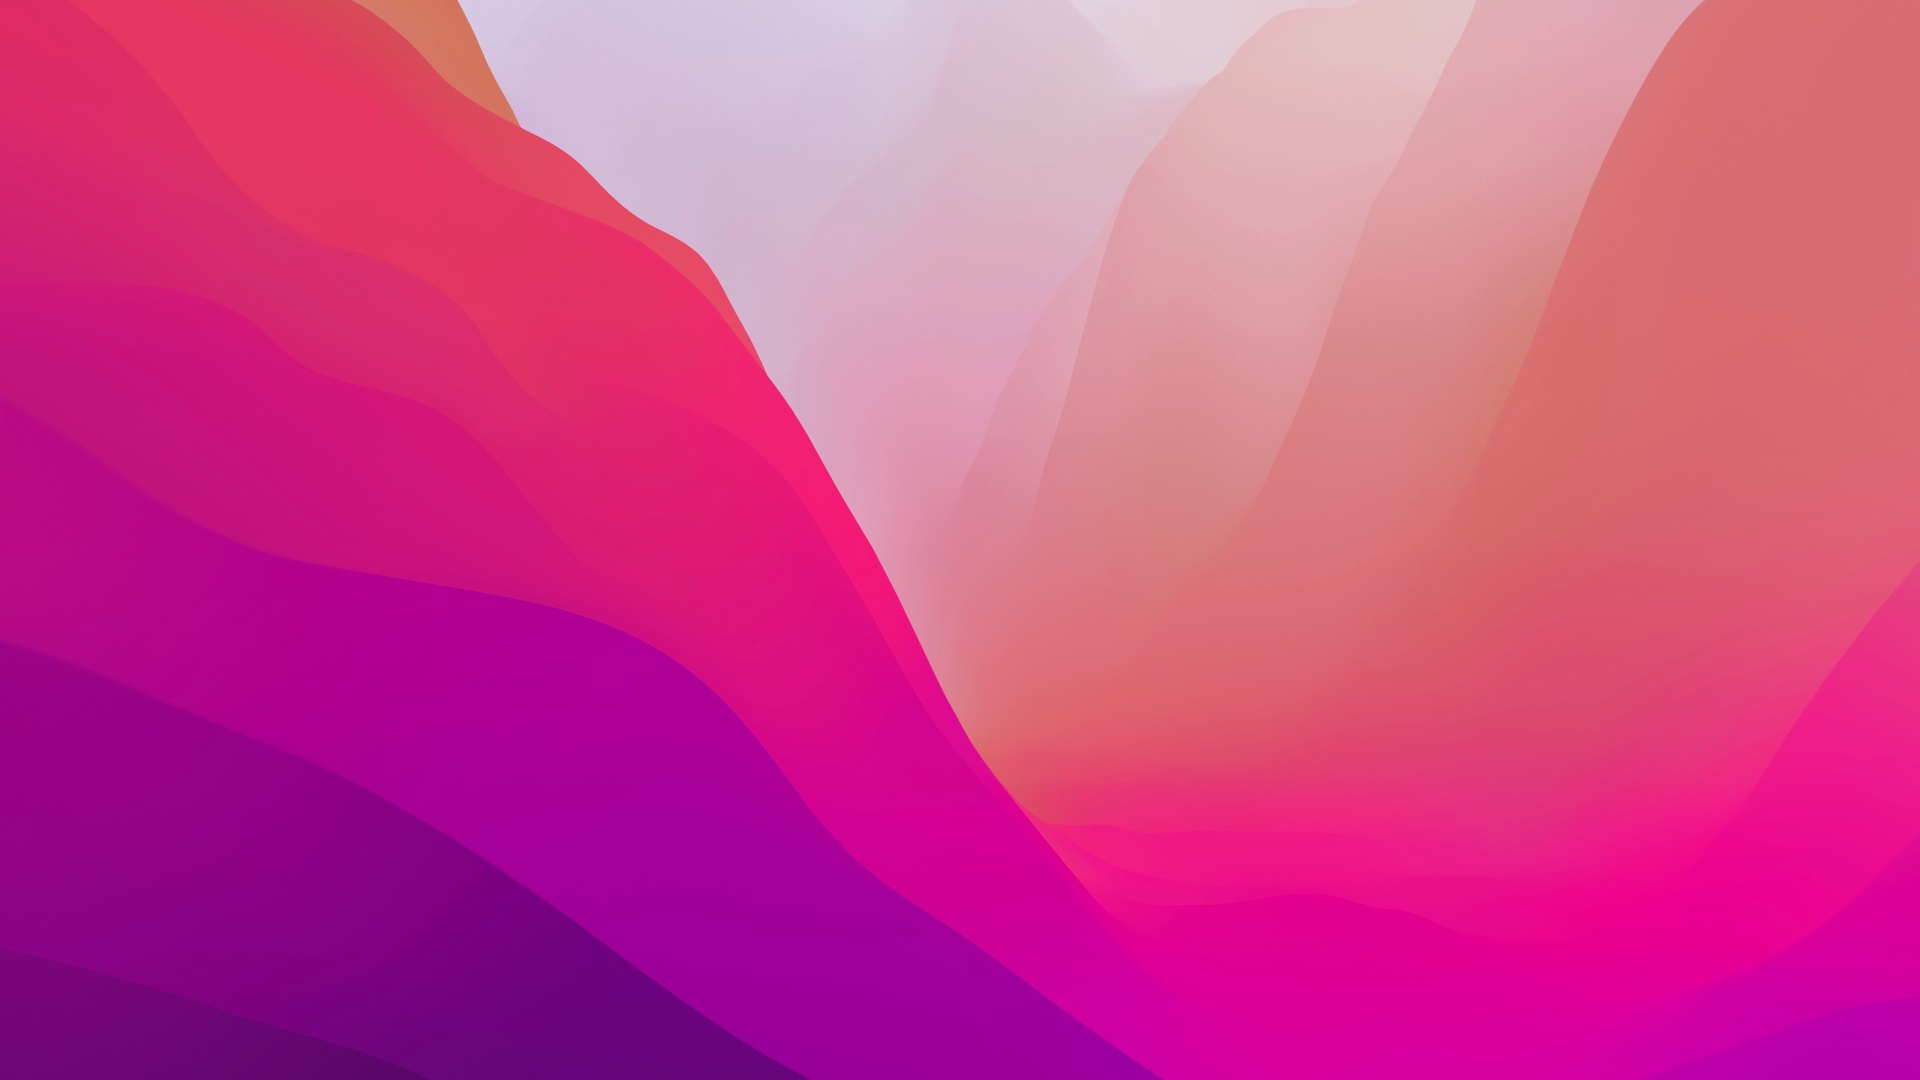 Bạn đang tìm kiếm một bức hình nền Macbook ấn tượng với độ phân giải 4K cao cấp? Đừng bỏ qua bức hình nền macOS Monterey màu hồng, nổi bật với phong cách gradient tuyệt đẹp. Hãy cập nhật cho chiếc Macbook của bạn ngay và trải nghiệm thú vị nhất.